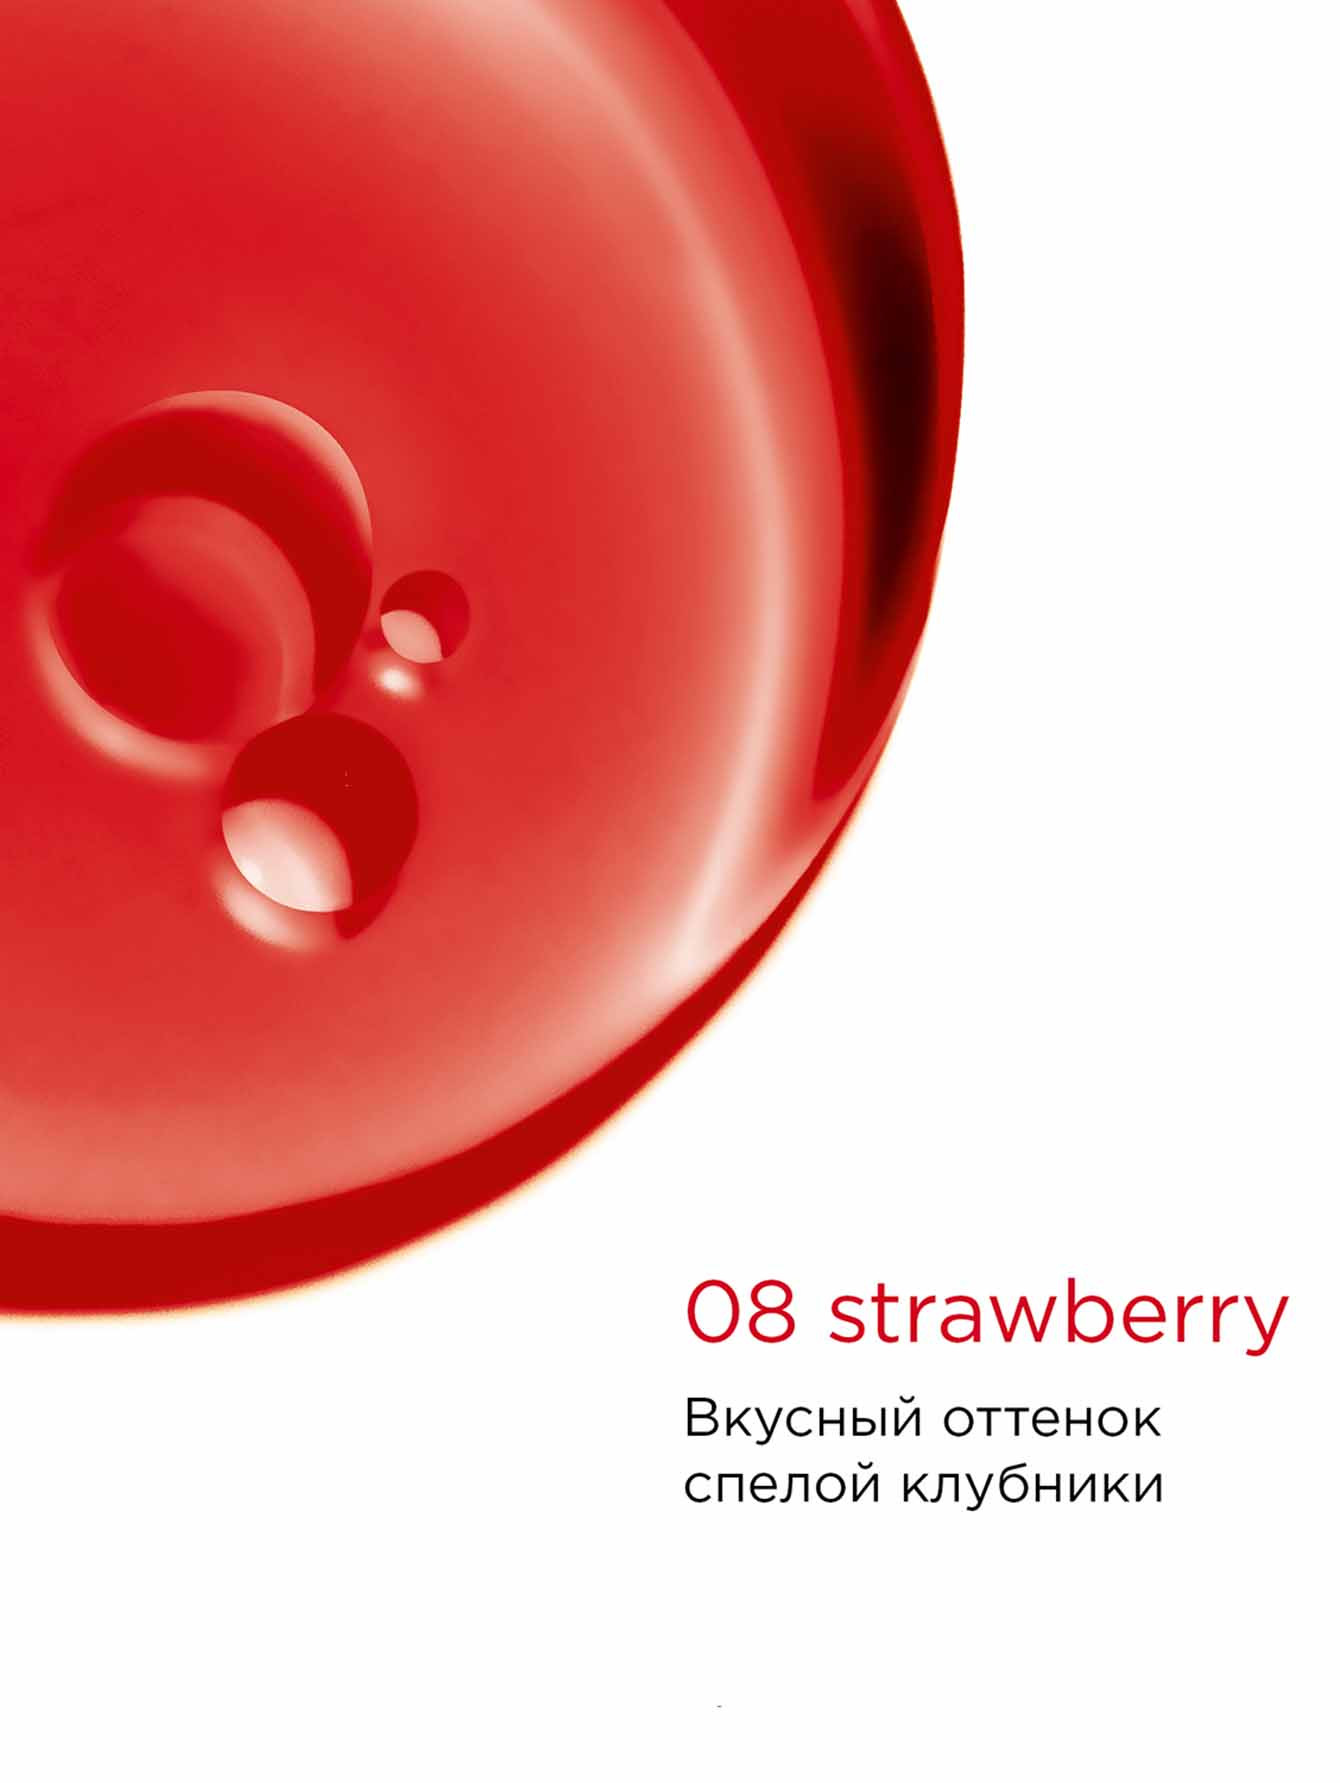 Масло-блеск для губ Lip Comfort, 08 Strawberry, 7 мл - Обтравка1